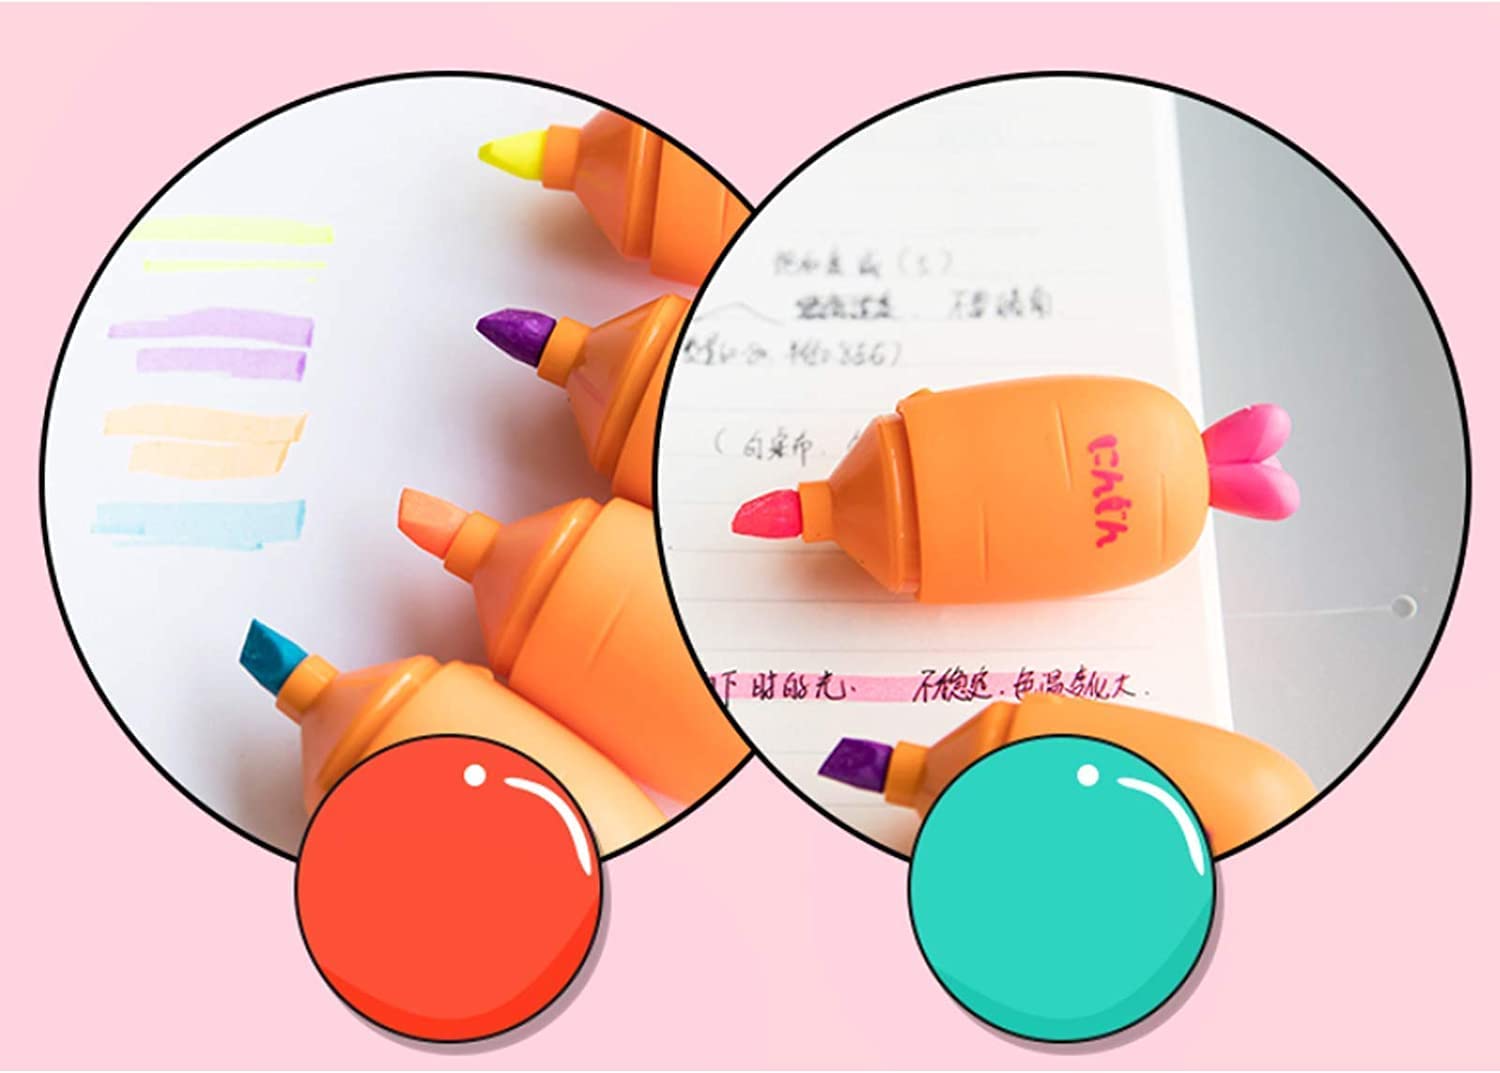 Carrot Mini Highlighter Marker Pen